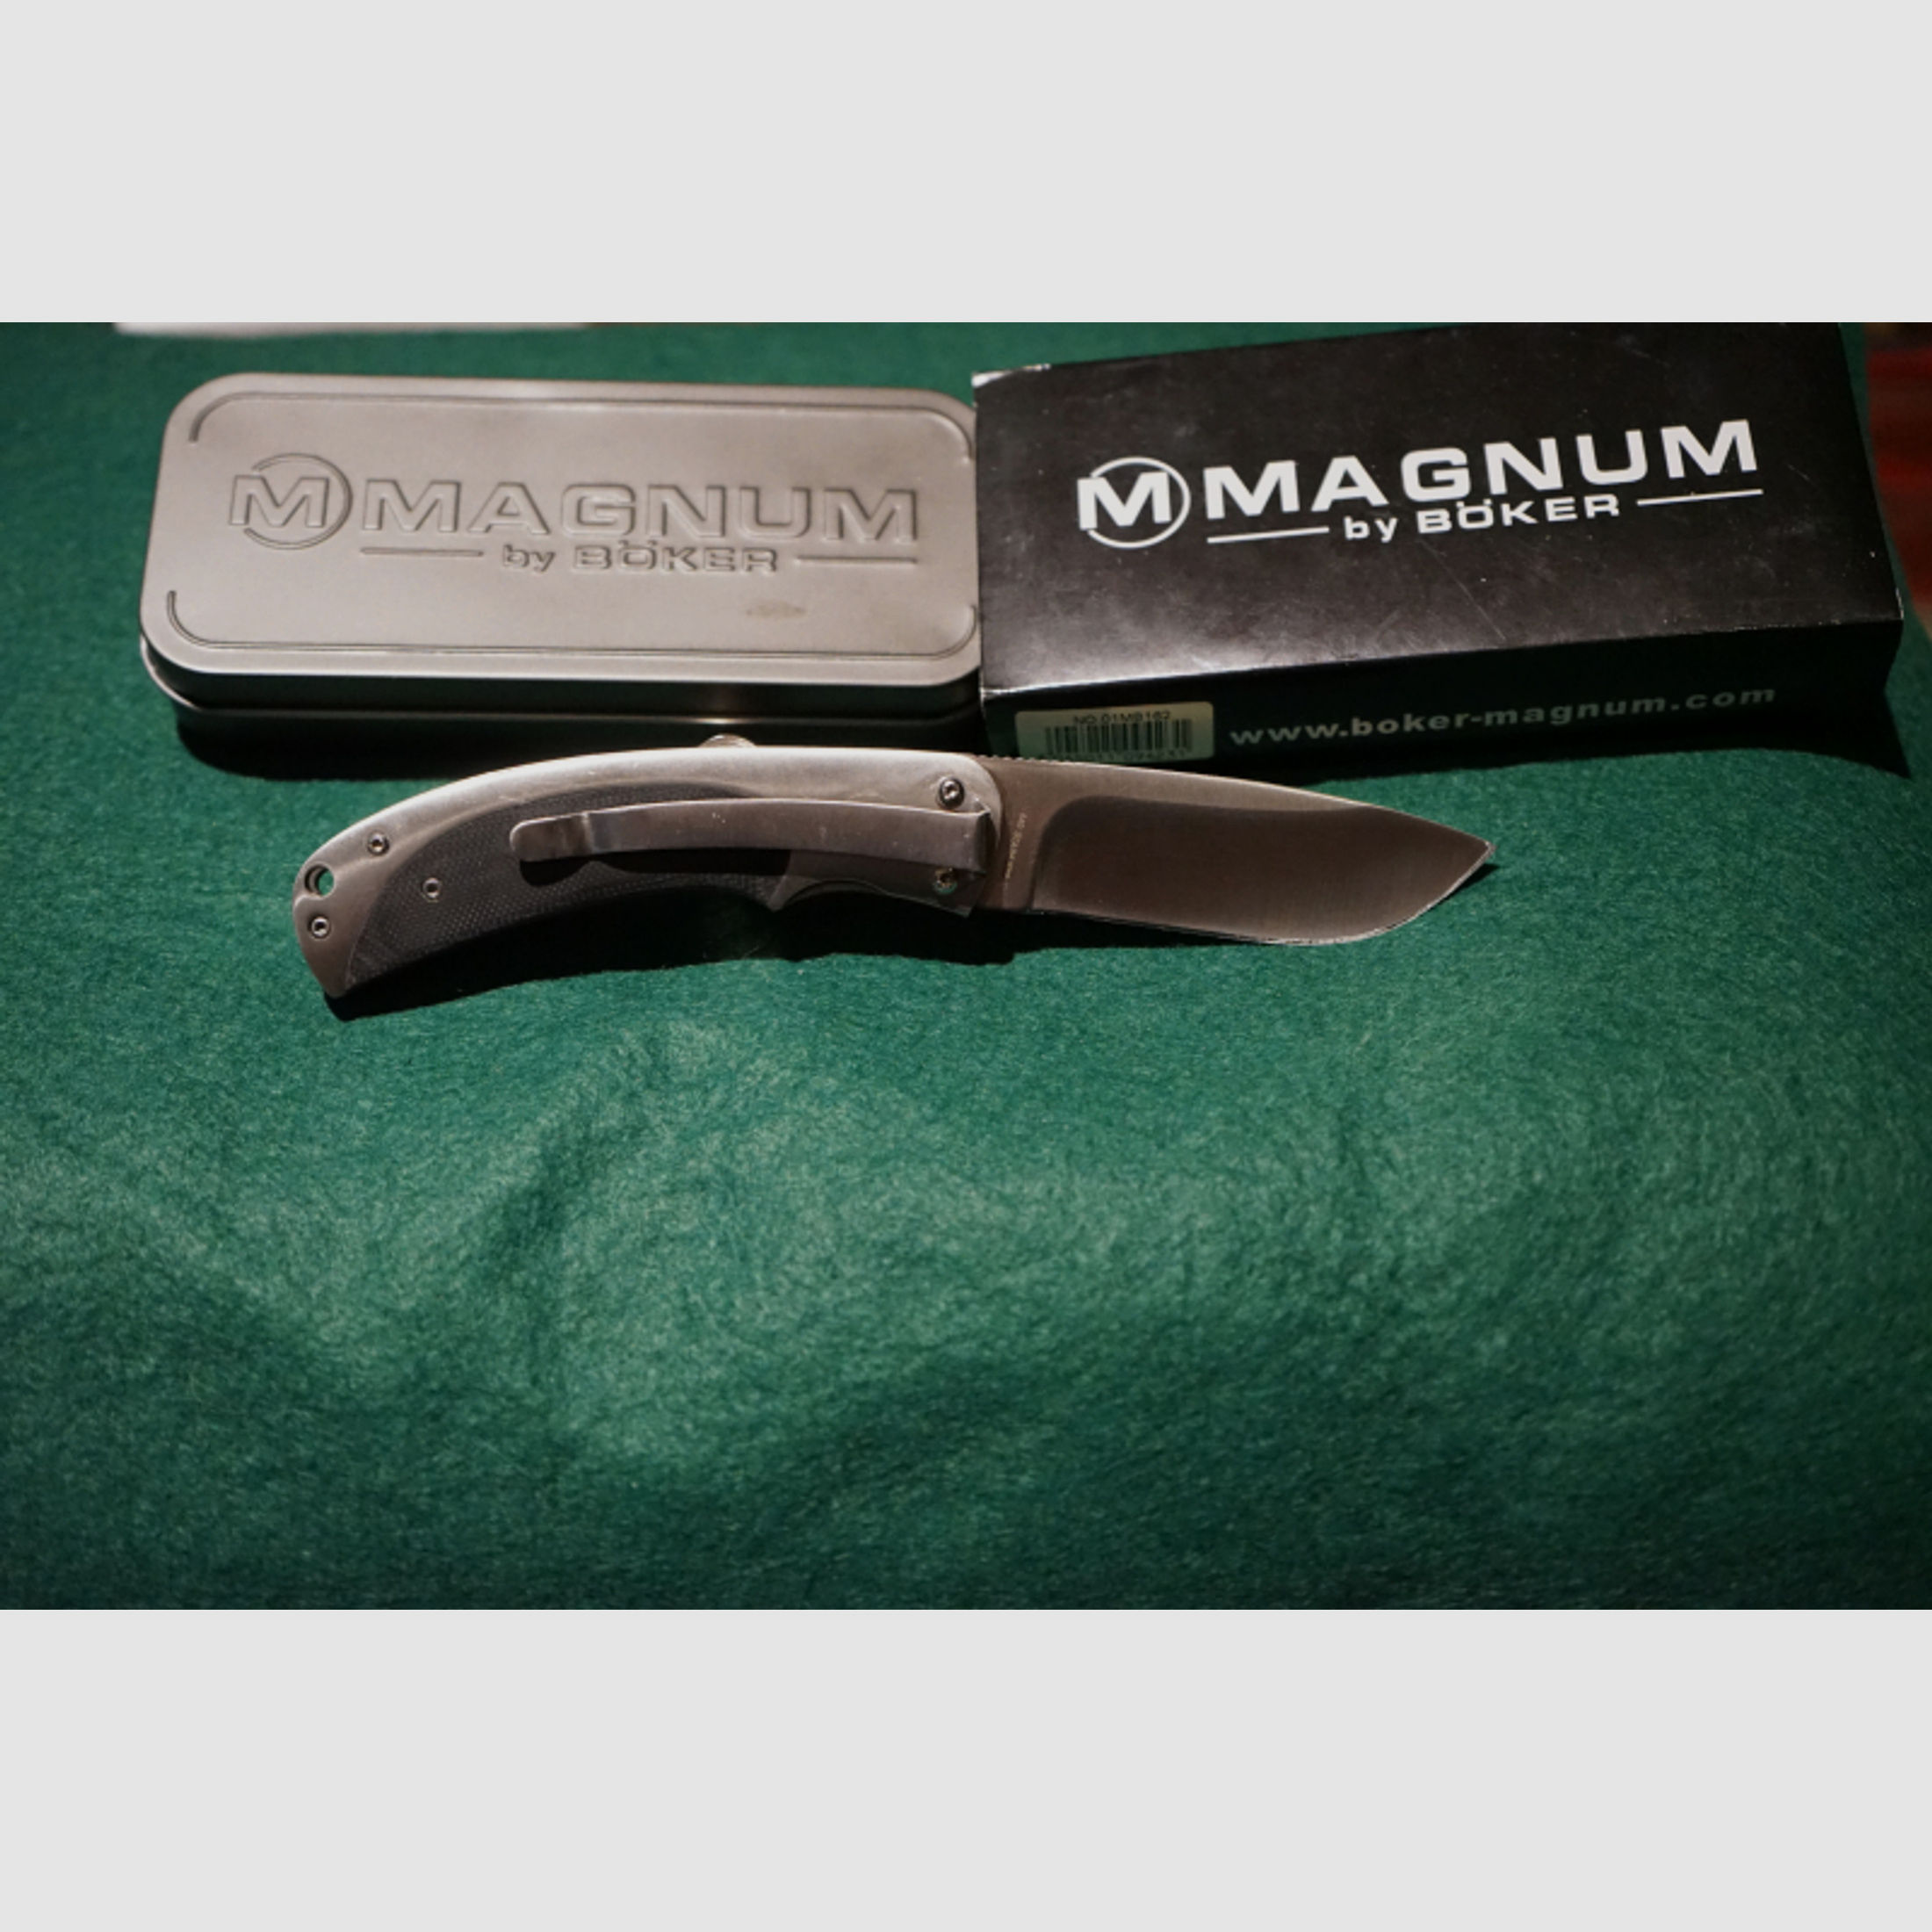 Böker Magnum Taschenmesser, Liner - Lock, siehe Fotos und Text